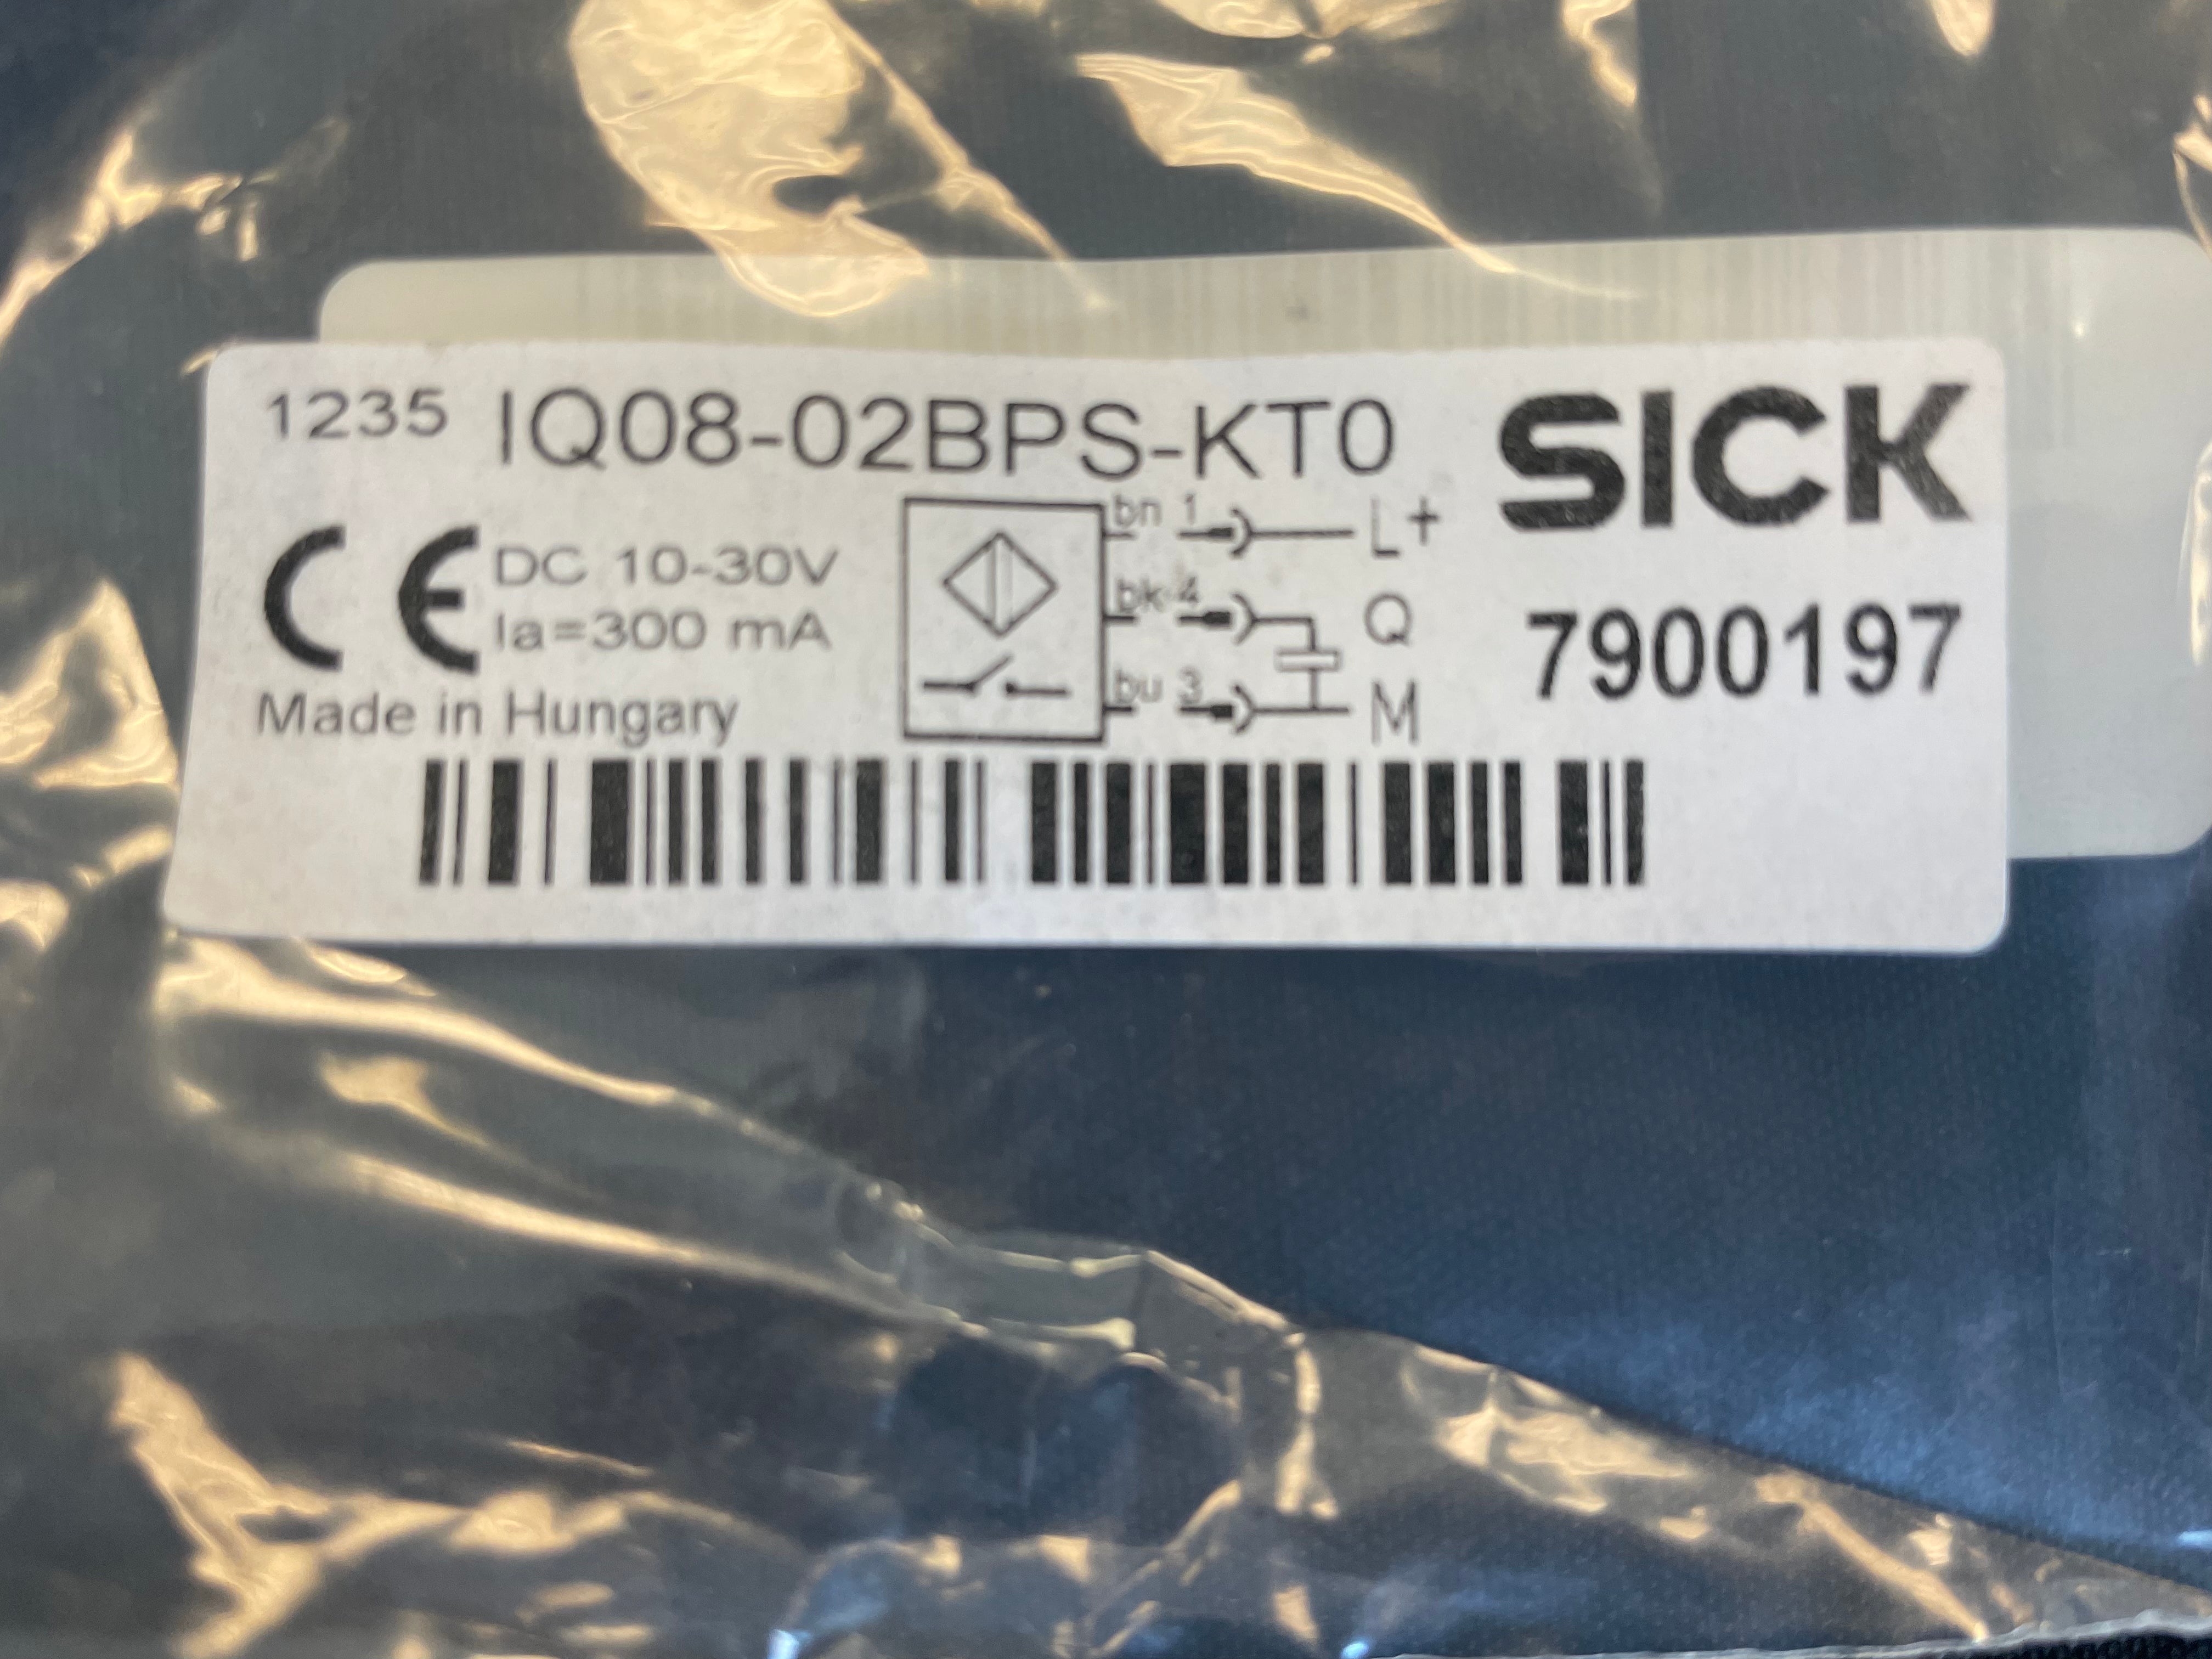 Proximity Switch Sick Mfg. 7900197